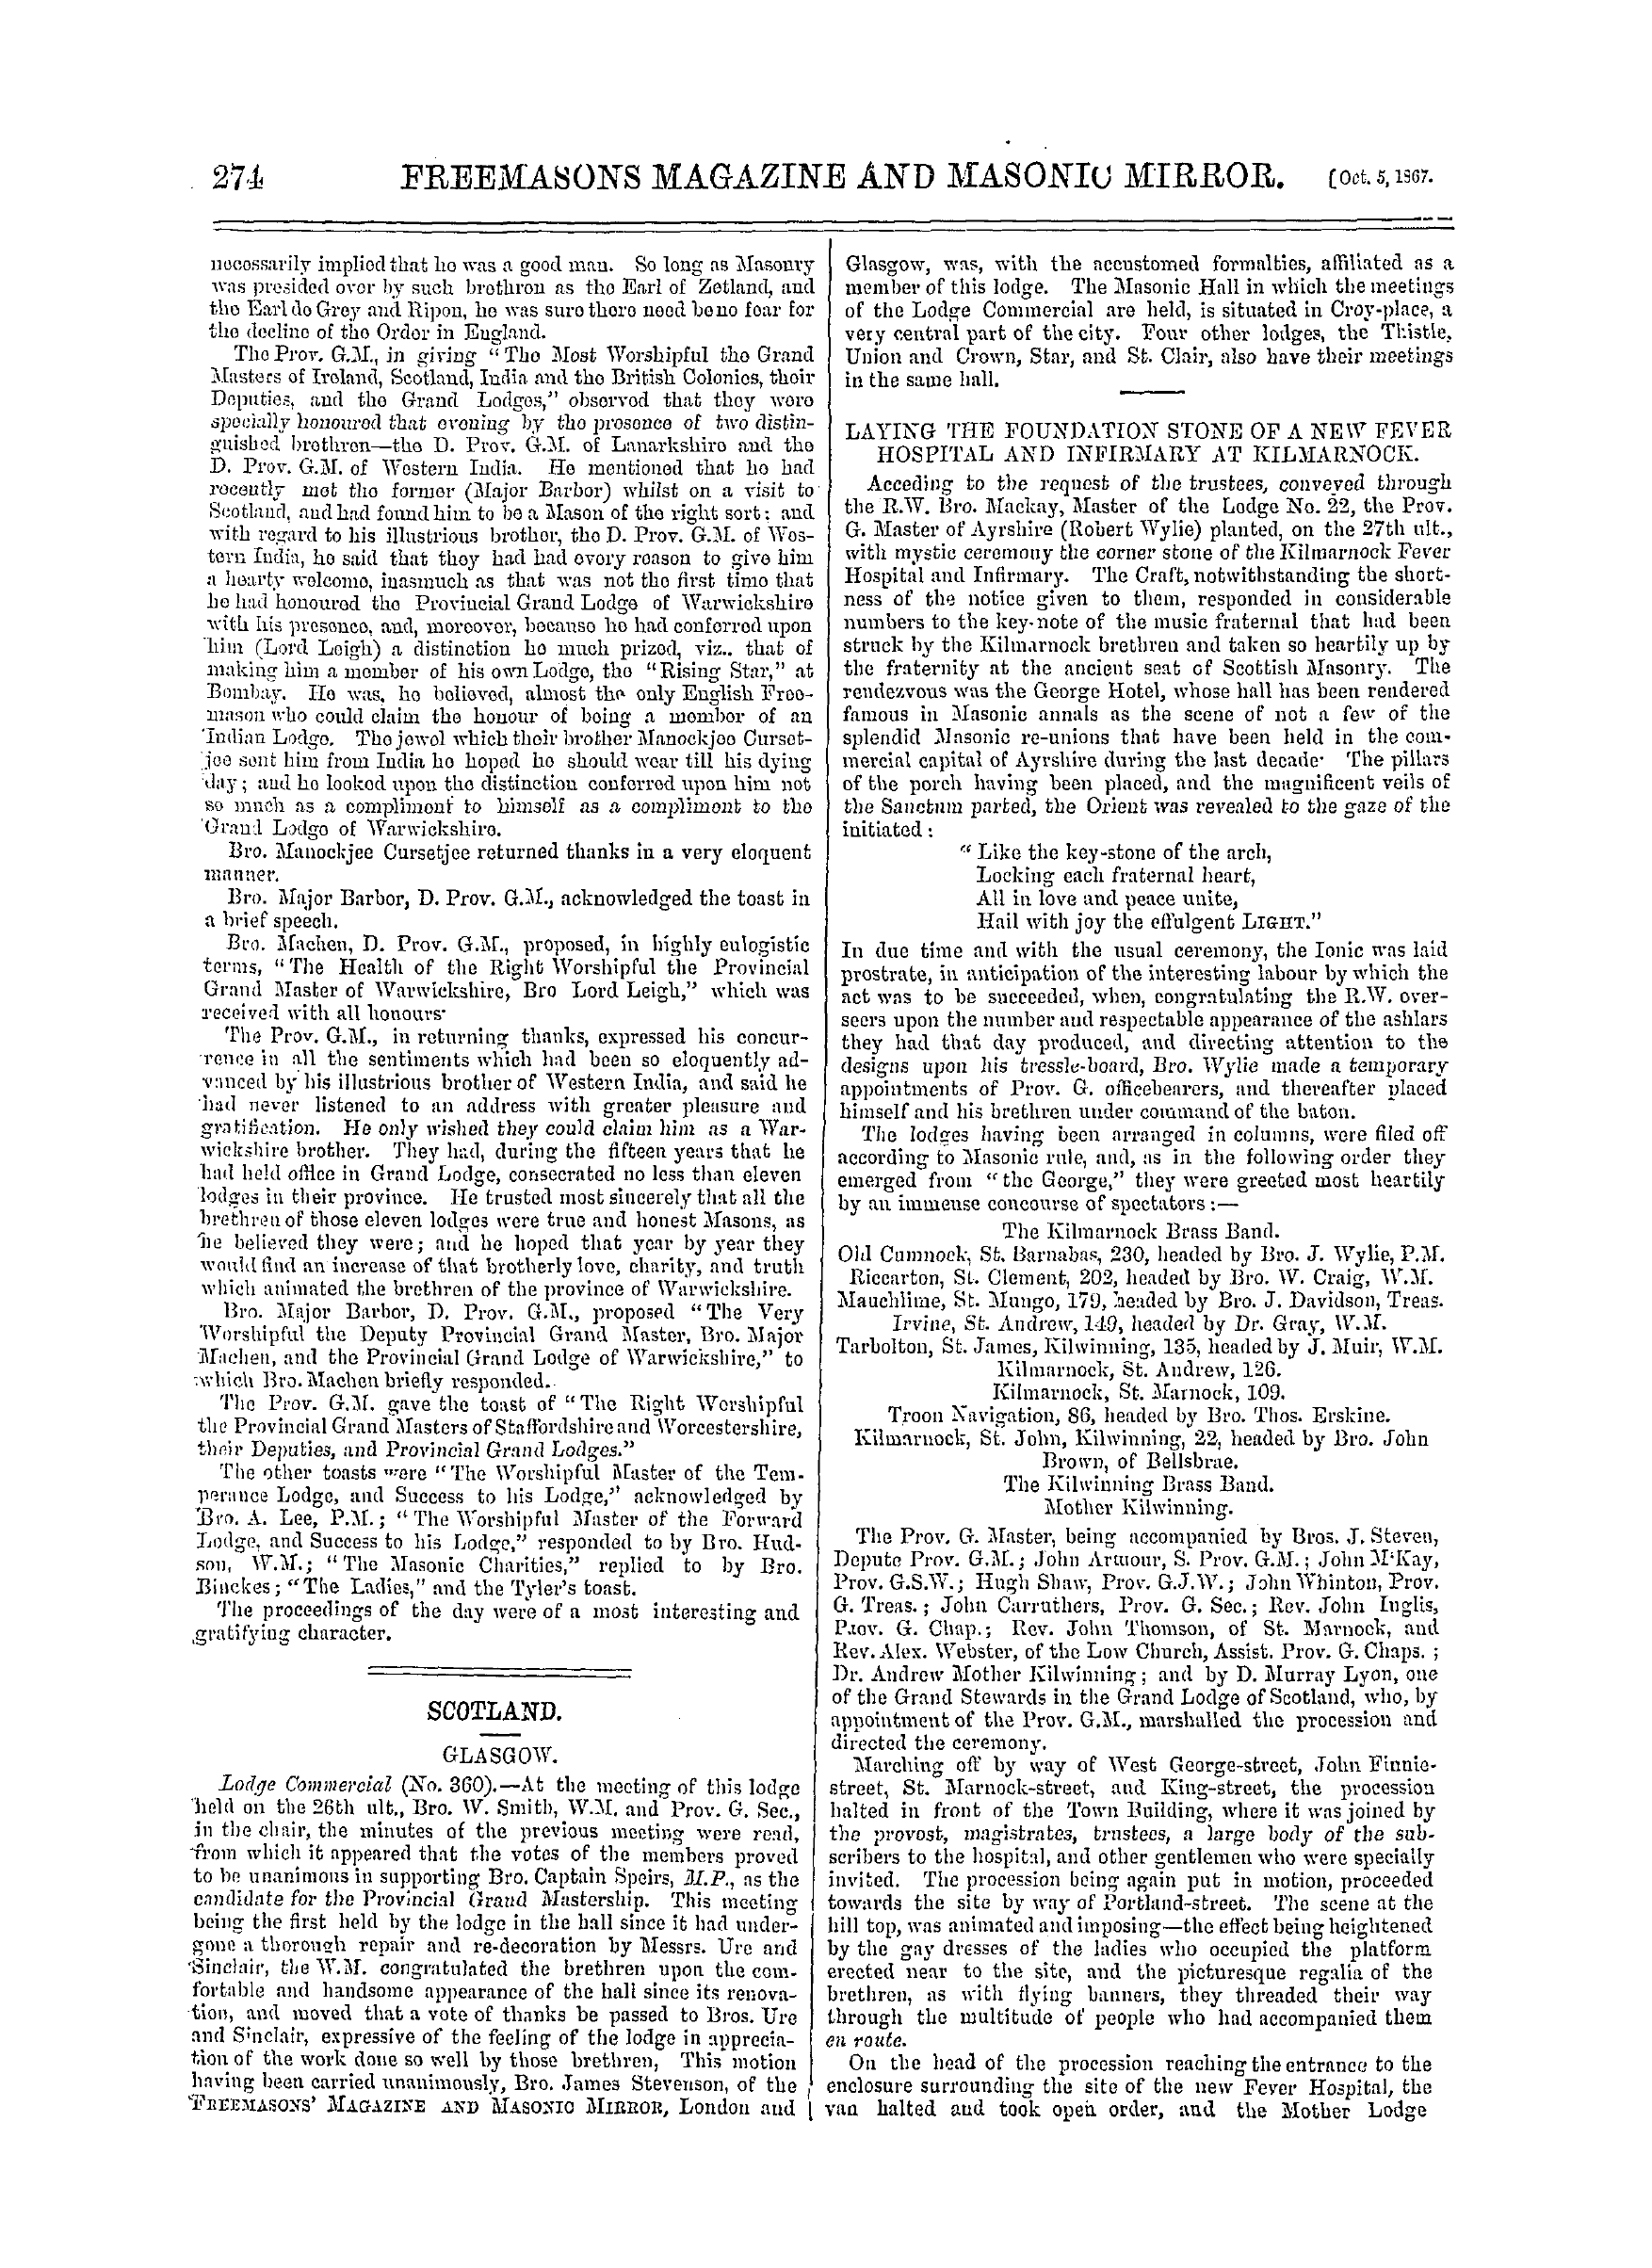 The Freemasons' Monthly Magazine: 1867-10-05: 14